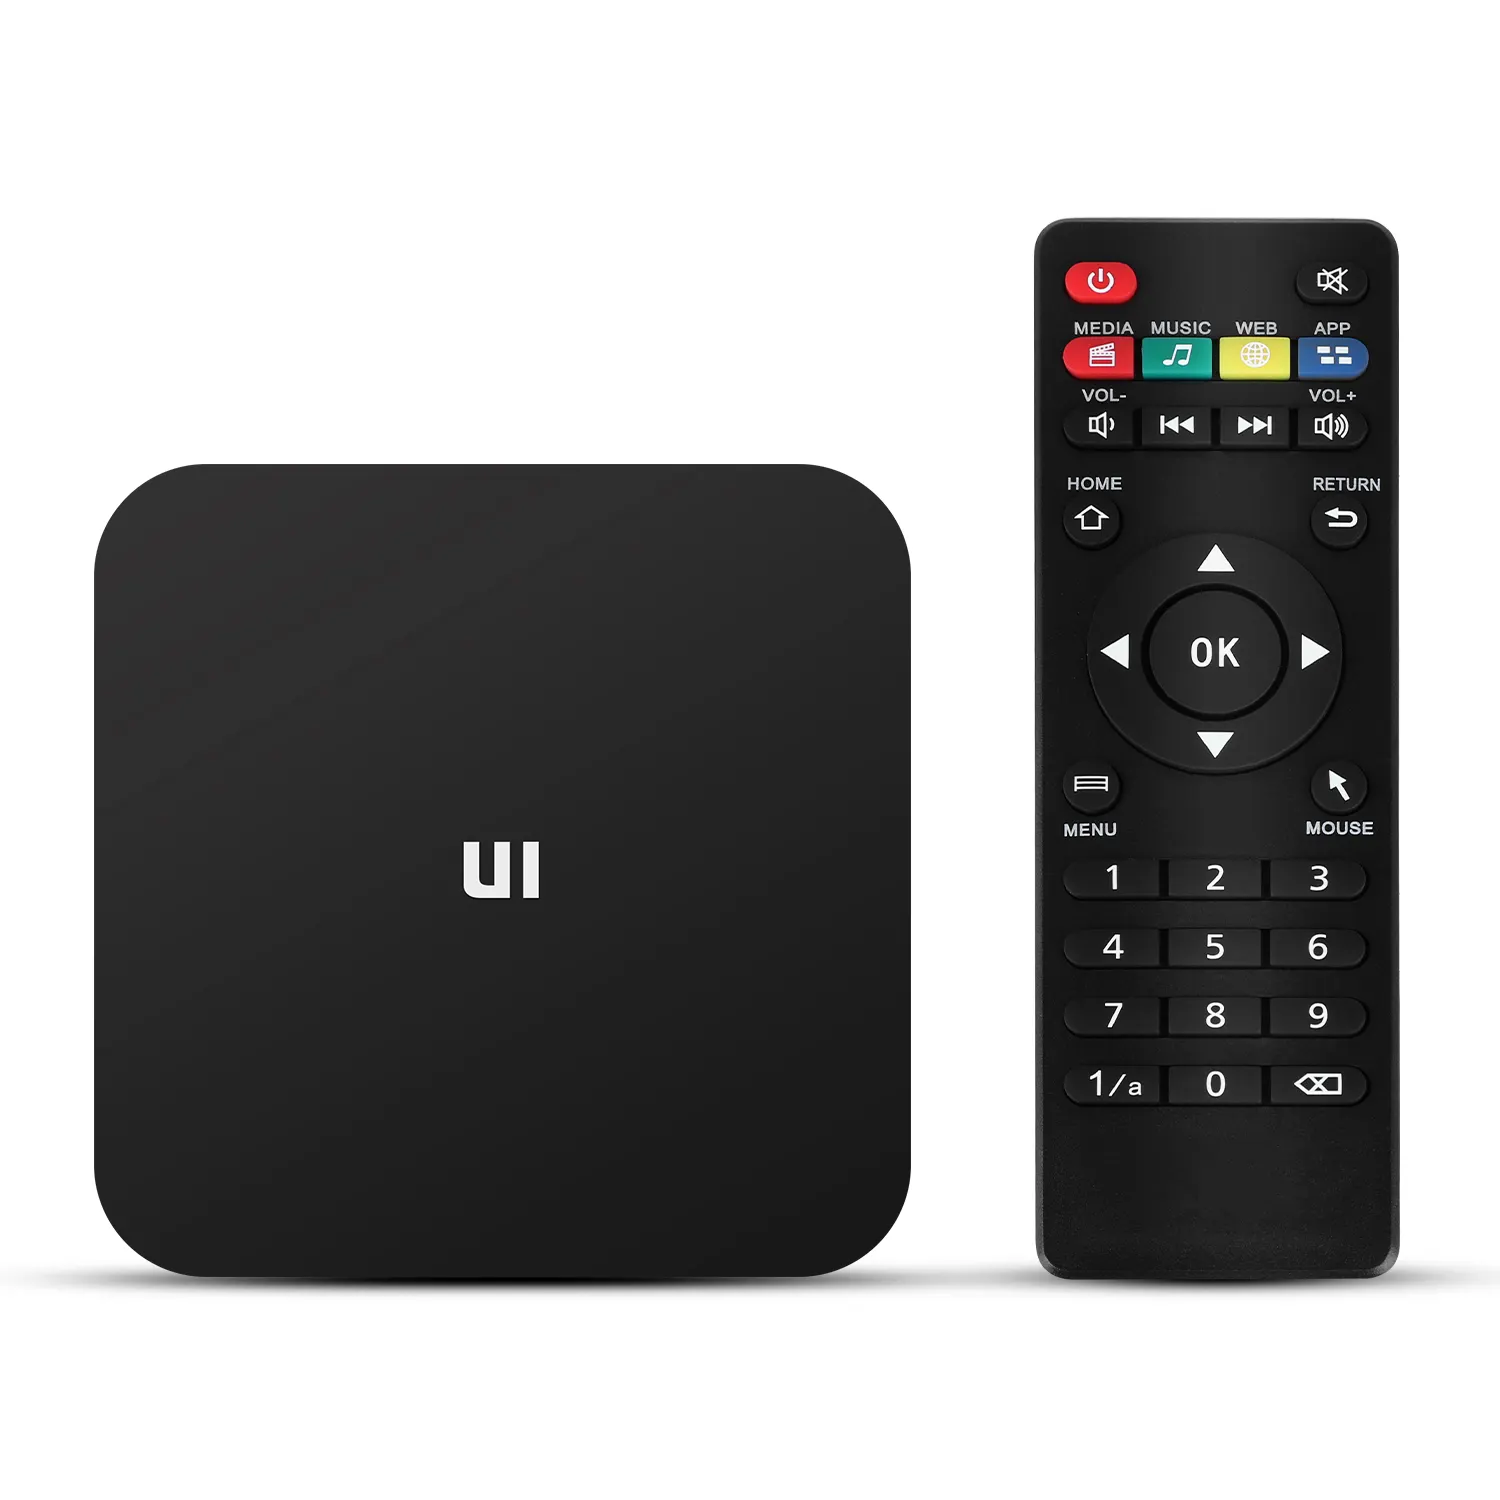 Bộ Giải Mã Tv Thông Minh Junuo U1, Tv Box S905w, Android 4K